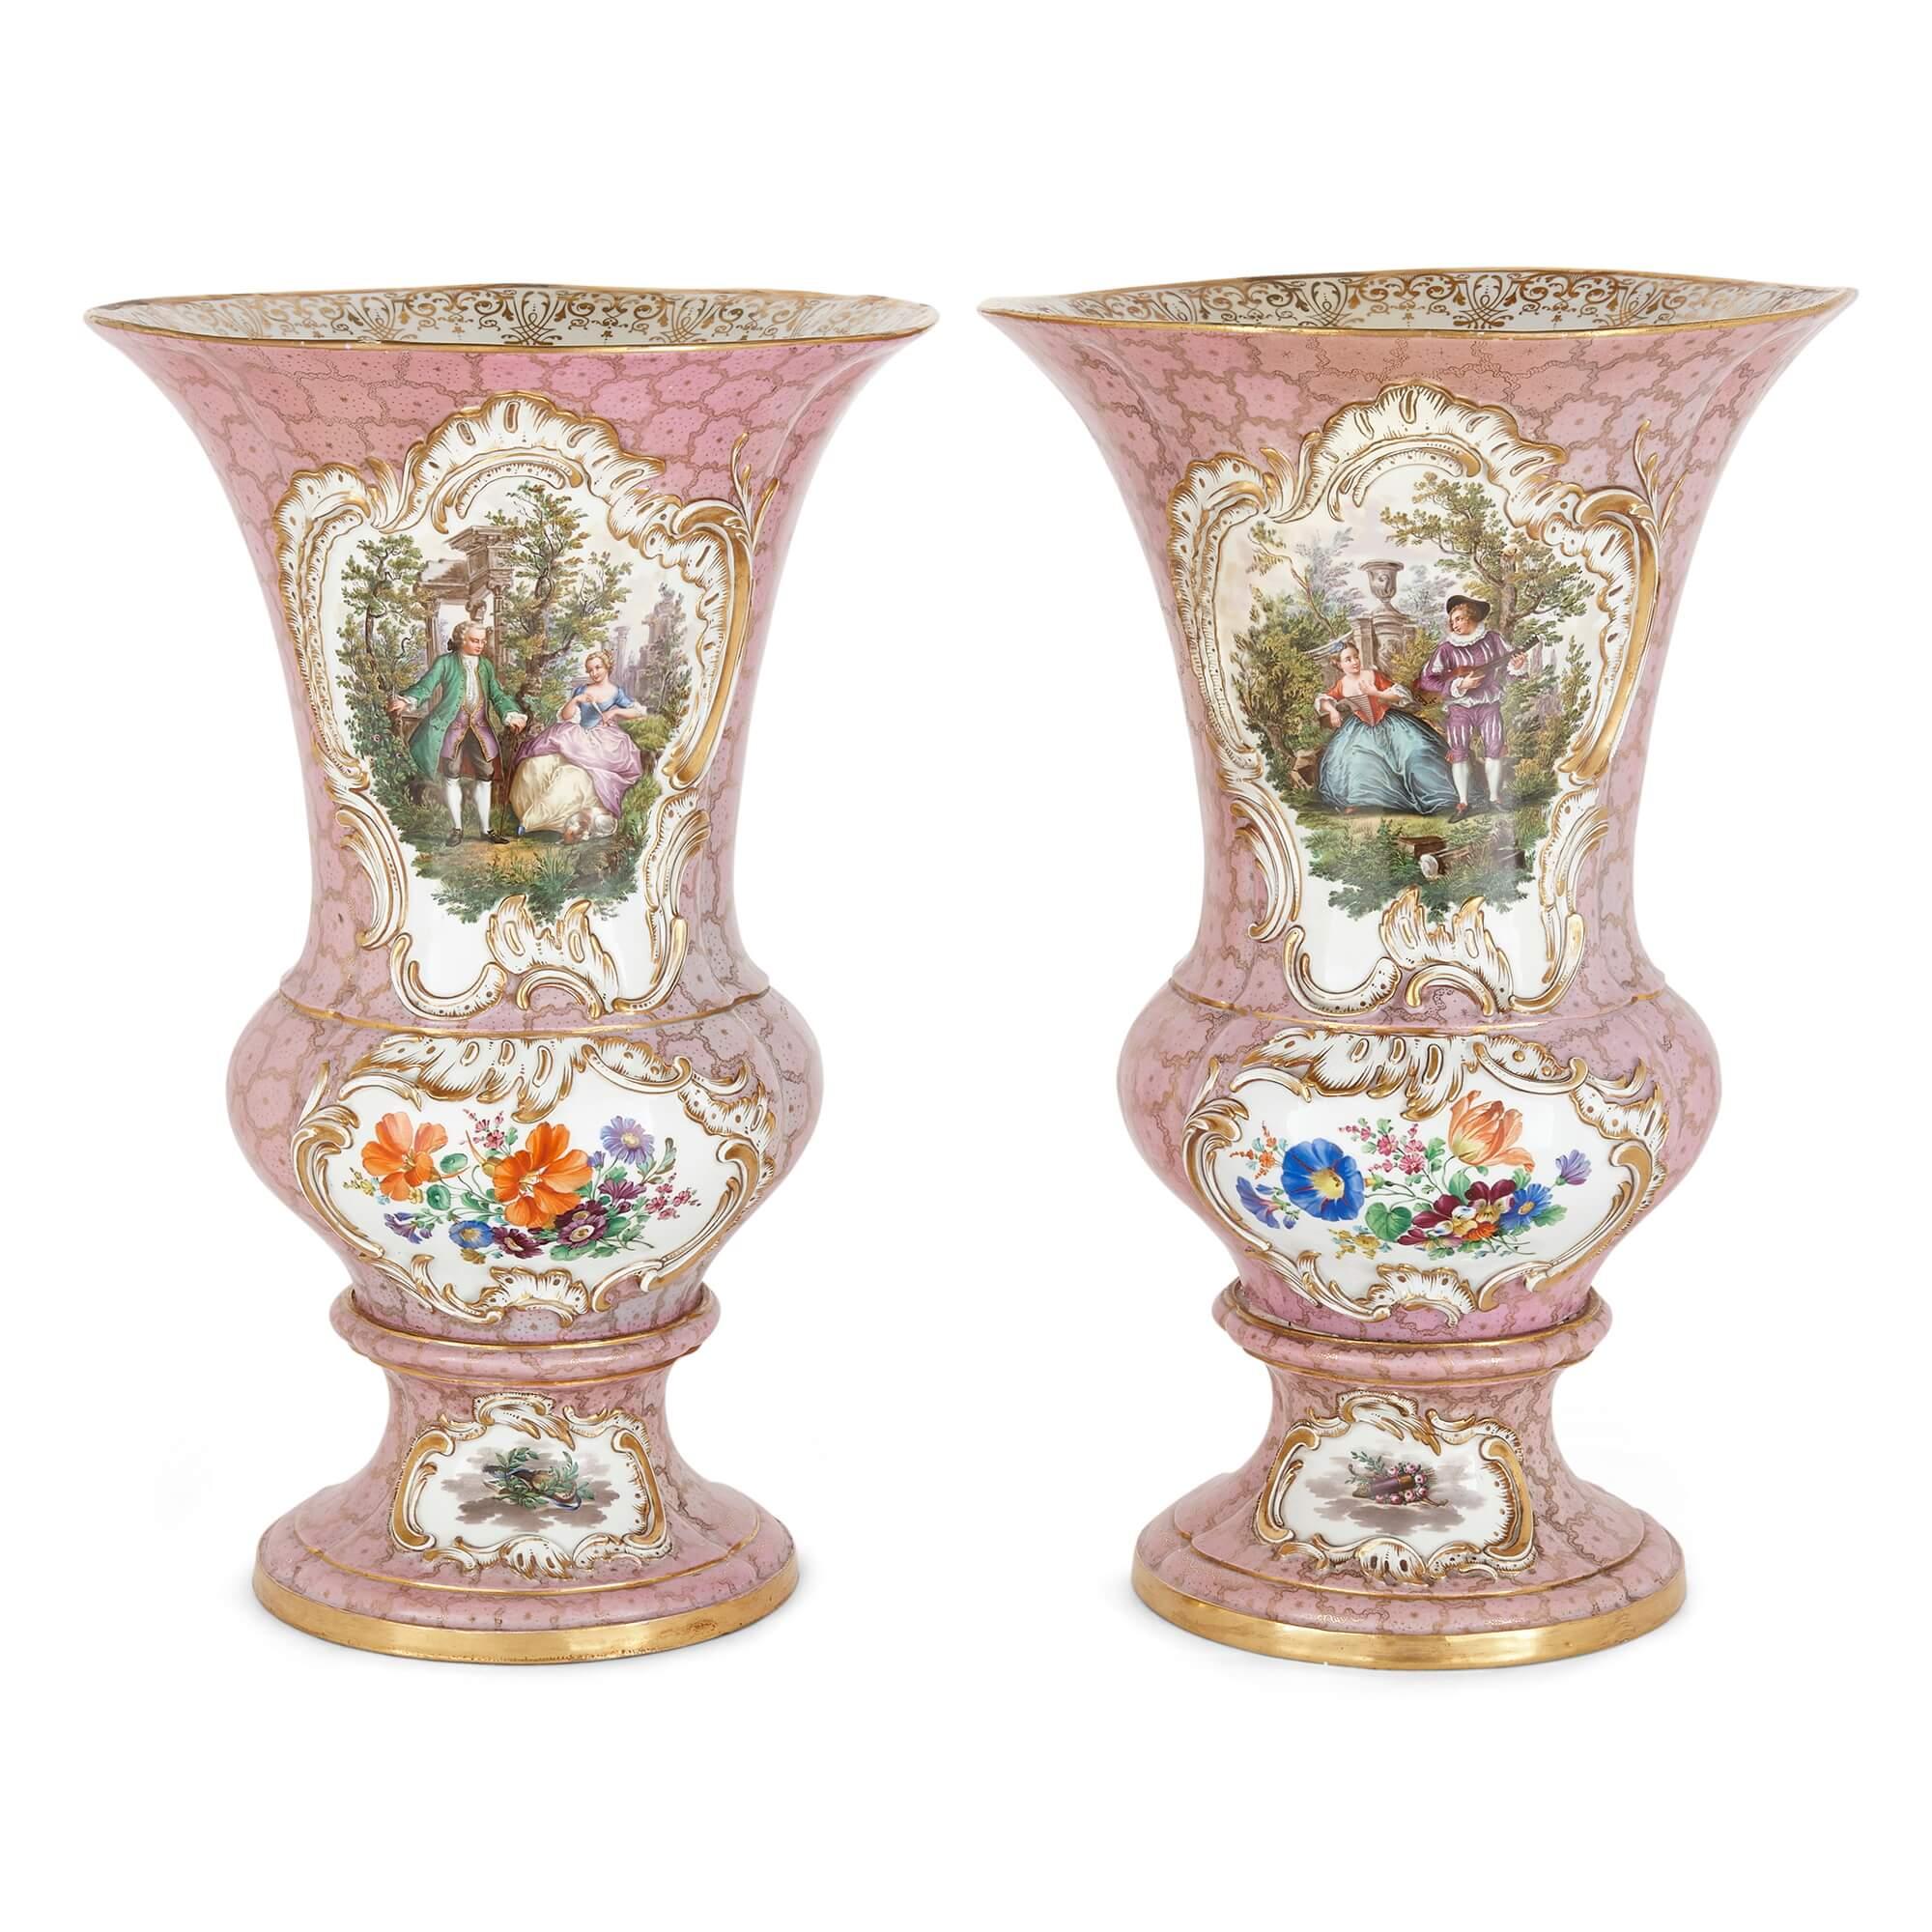 Paar große Blumenvasen aus Meissener Porzellan mit rosa Grund 
Deutsch, Ende 19. Jahrhundert 
Höhe 48, Durchmesser 31cm

Dieses beeindruckende Paar Porzellanvasen aus der renommierten deutschen Porzellanmanufaktur ist mit fließenden Formen im